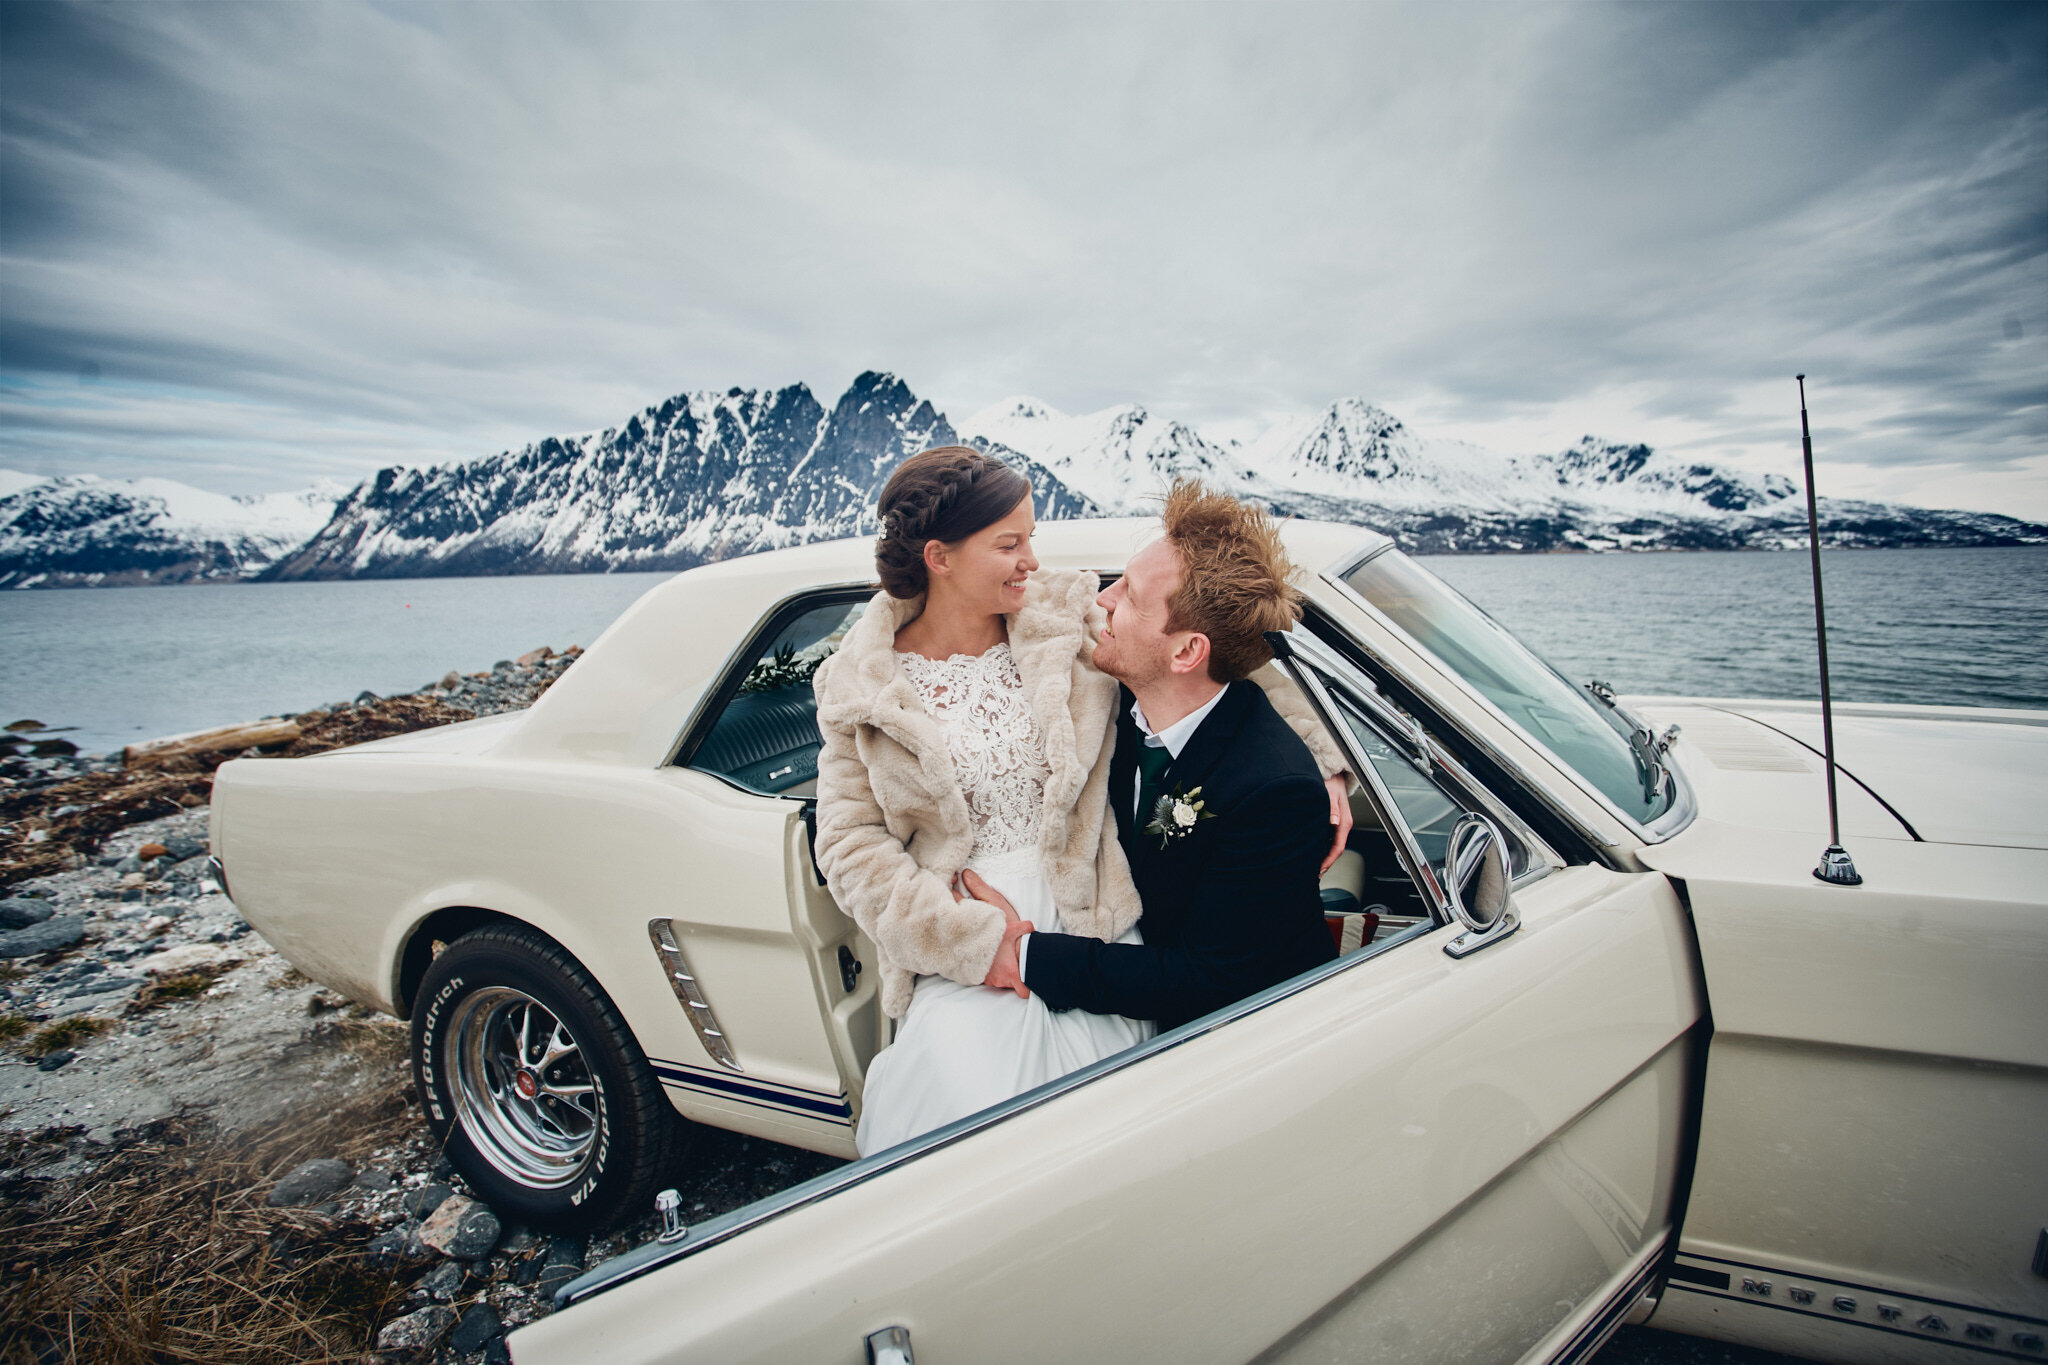   Bryllup i Harstad:  Det var bare så vidt Lisbeth og Einar fikk gjennomført bryllupet sitt, men om de så skulle gifte seg alene - bilder ville de ha. Så da gikk turen til Harstad, der vielse og fotografering ble holdt i slående vakre omgivelser. Sel